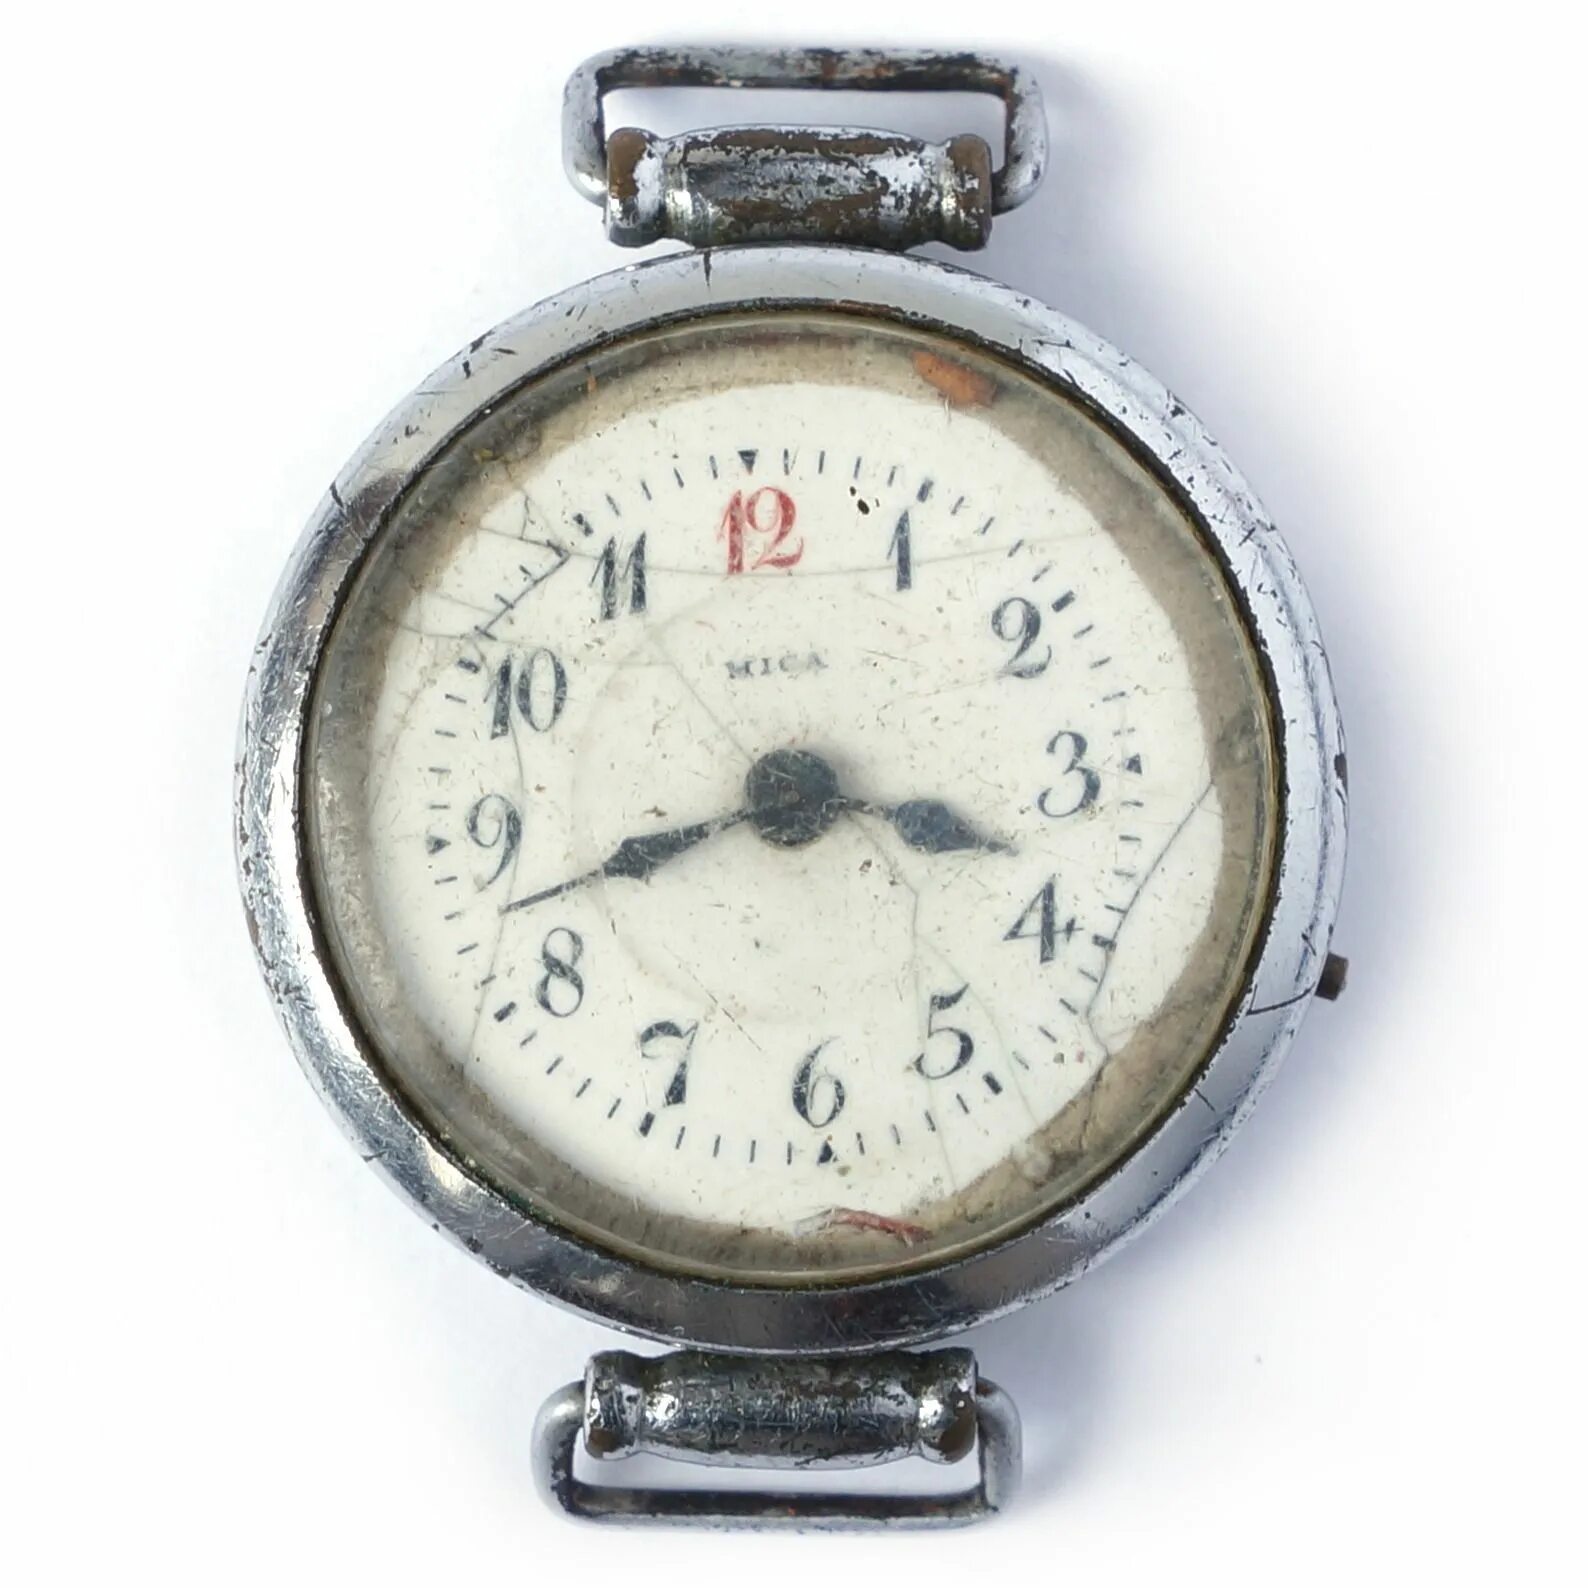 Сумы часы. Часы Точмех Москва. Старые наручные часы. Swiss made часы старые наручные. Часы Optima старинные наручные.